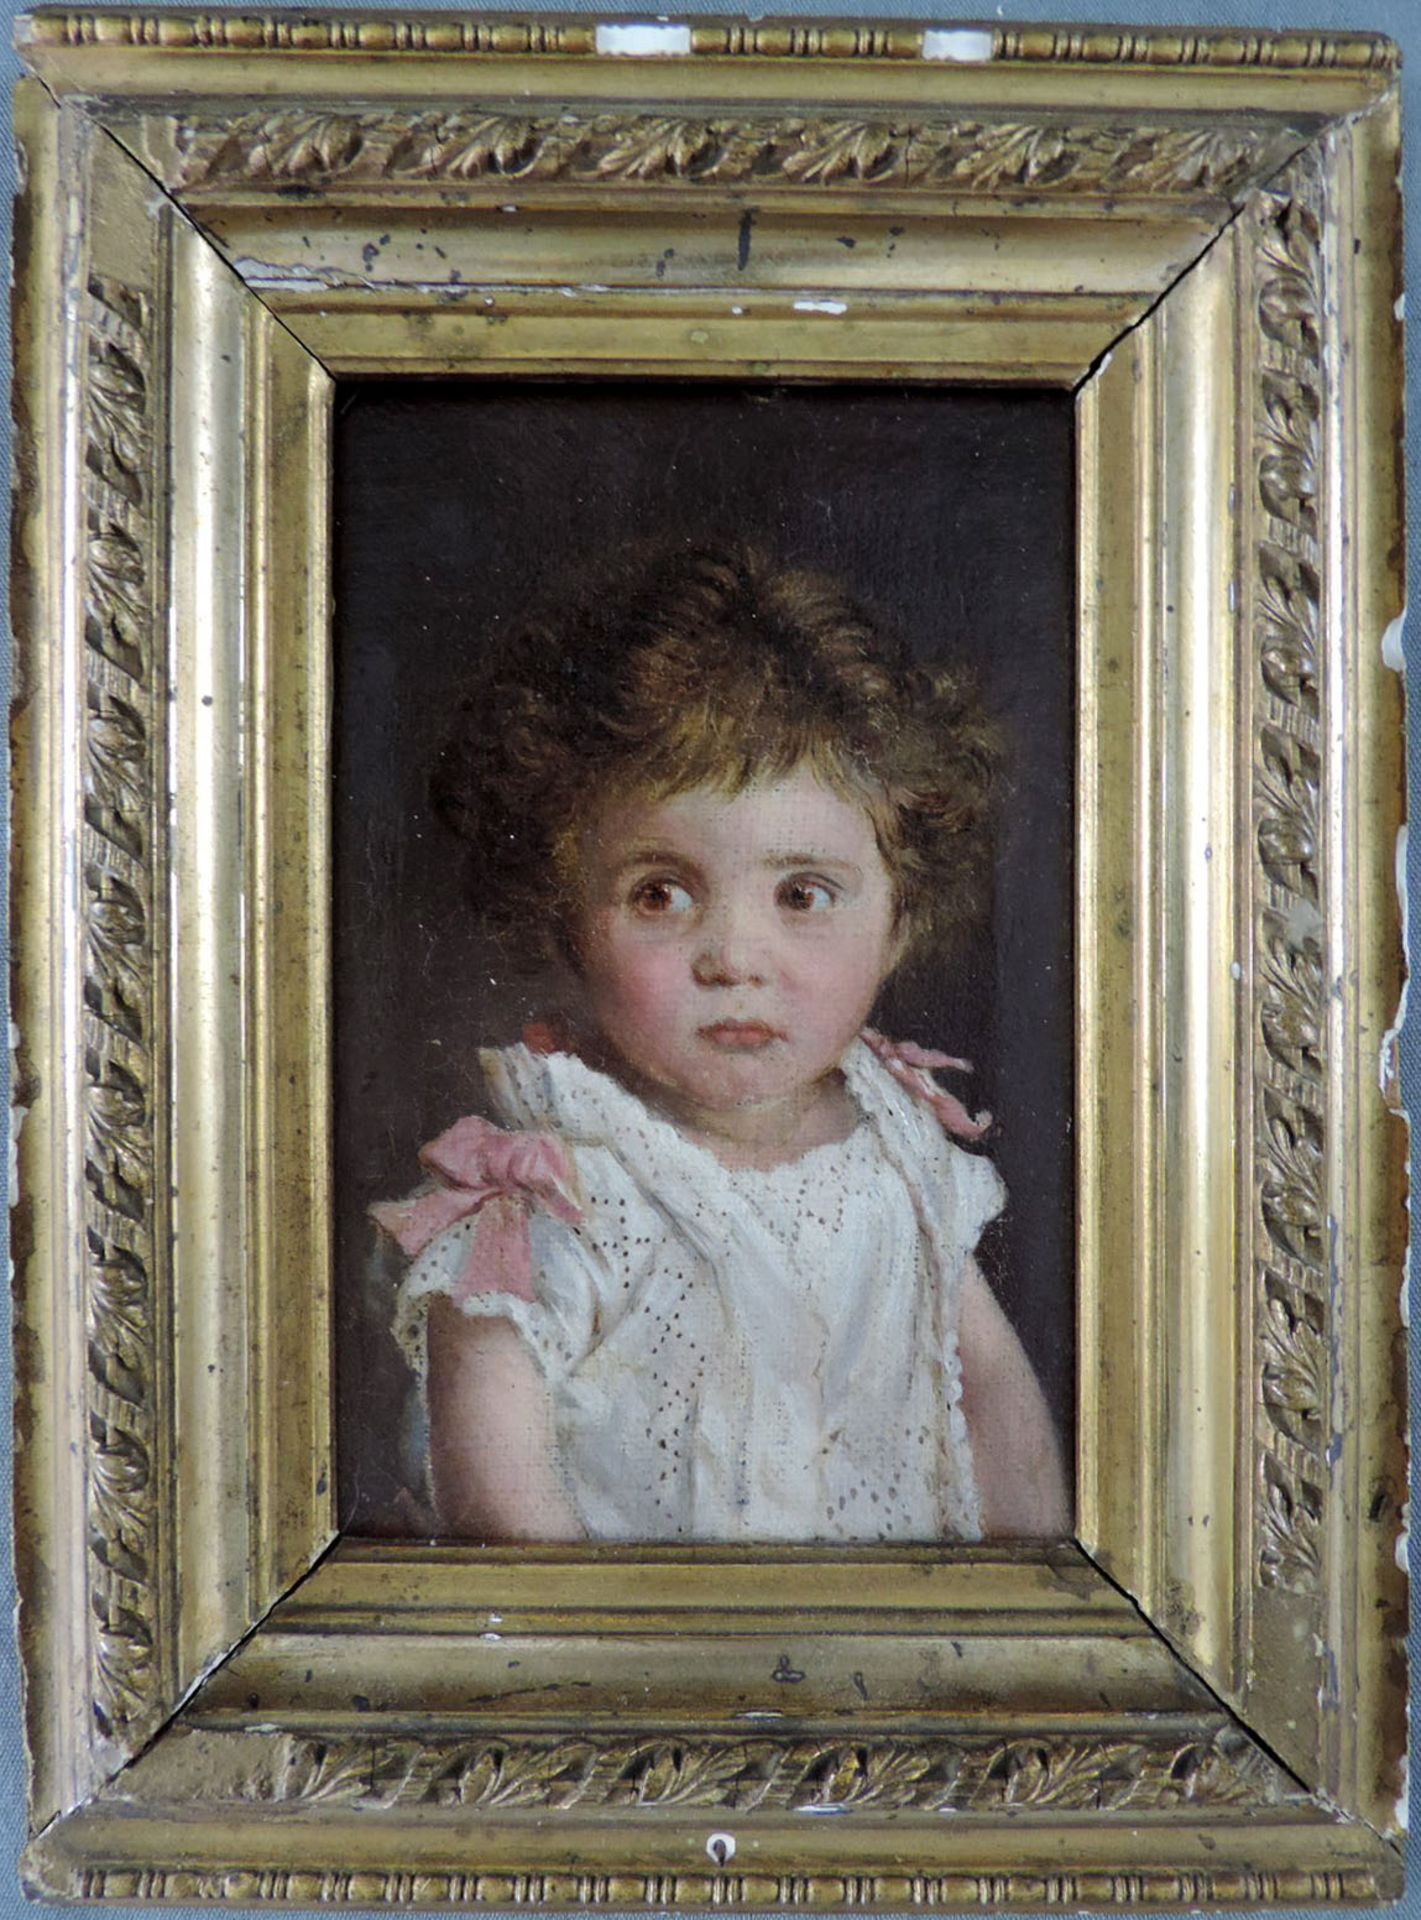 Portrait der Gertrud von Loebell, geboren 13. Januar 1878, gemalt Juli 1879.15 cm x 10 cm. - Image 4 of 4